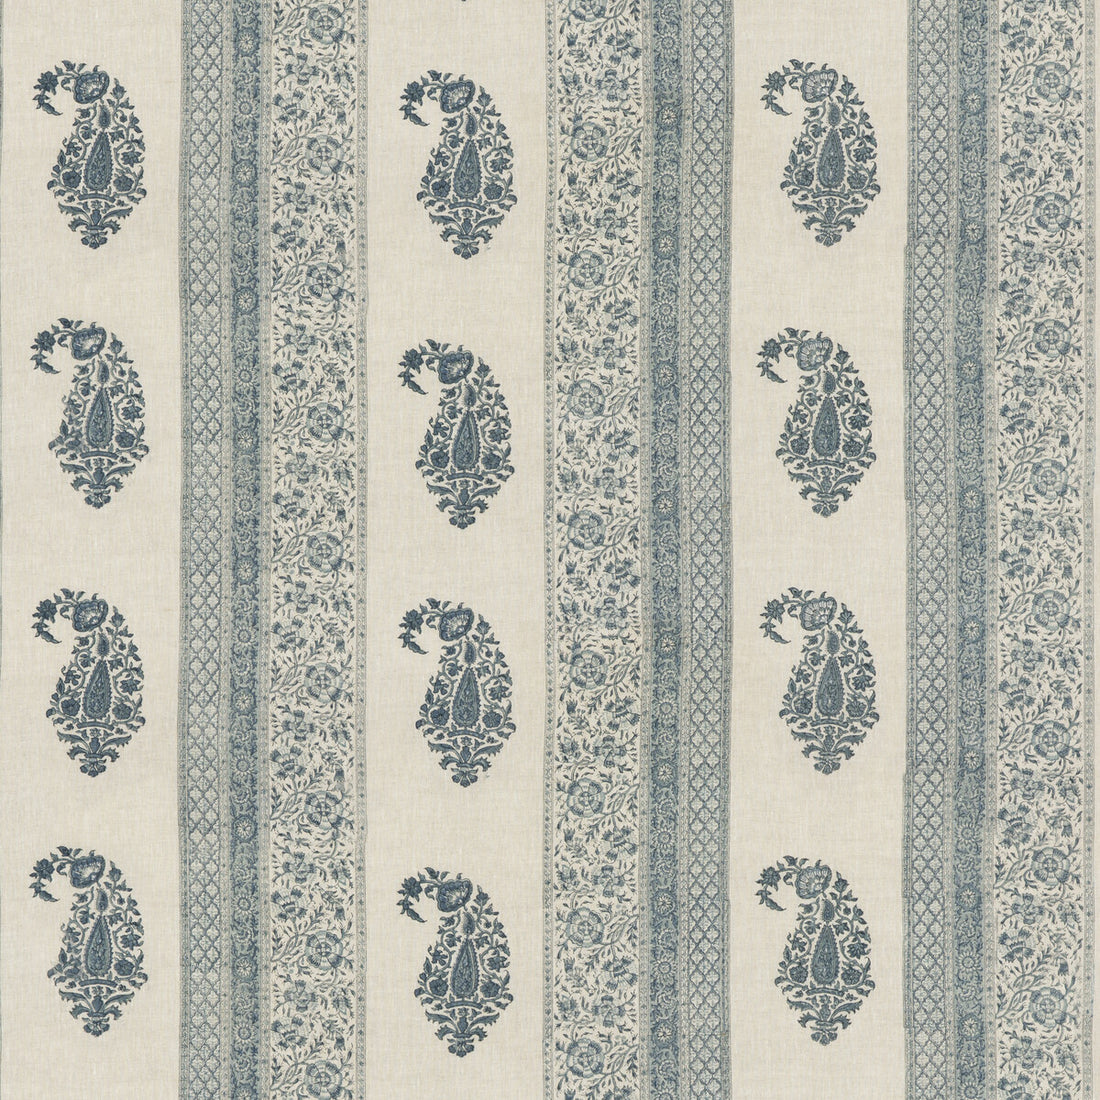 Portobello fabric in blue color - pattern BP10915.1.0 - by G P &amp; J Baker in the Portobello collection